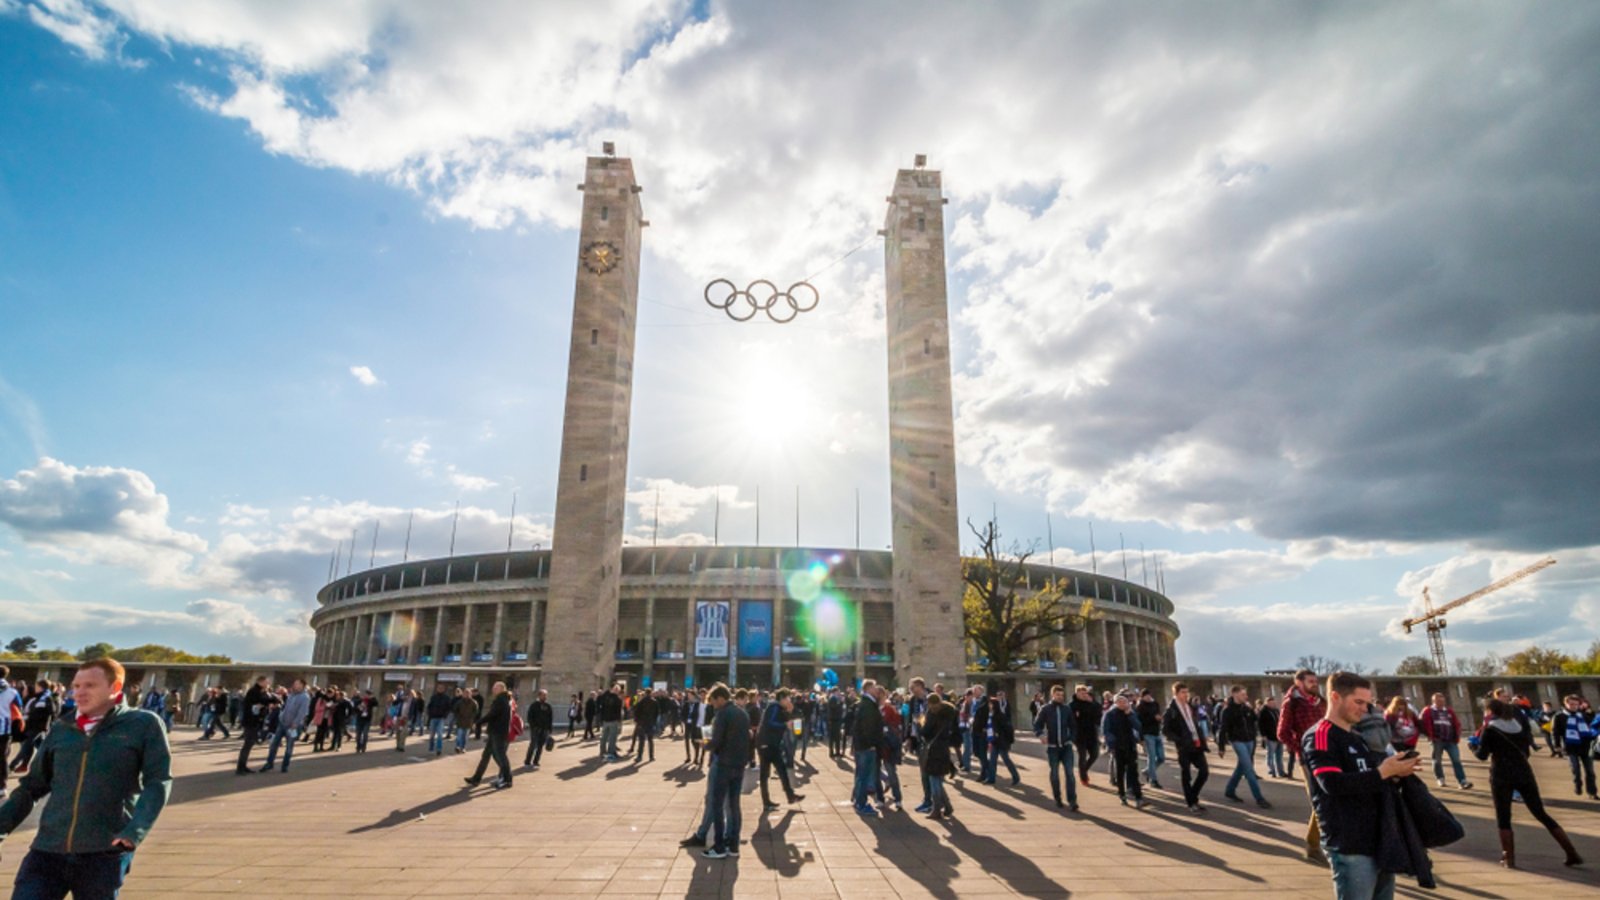 Seit 1985 wird das DFB-Pokalfinale im Berliner Olympiastadion ausgetragen.Foto: JohnKruger / shutterstock.com